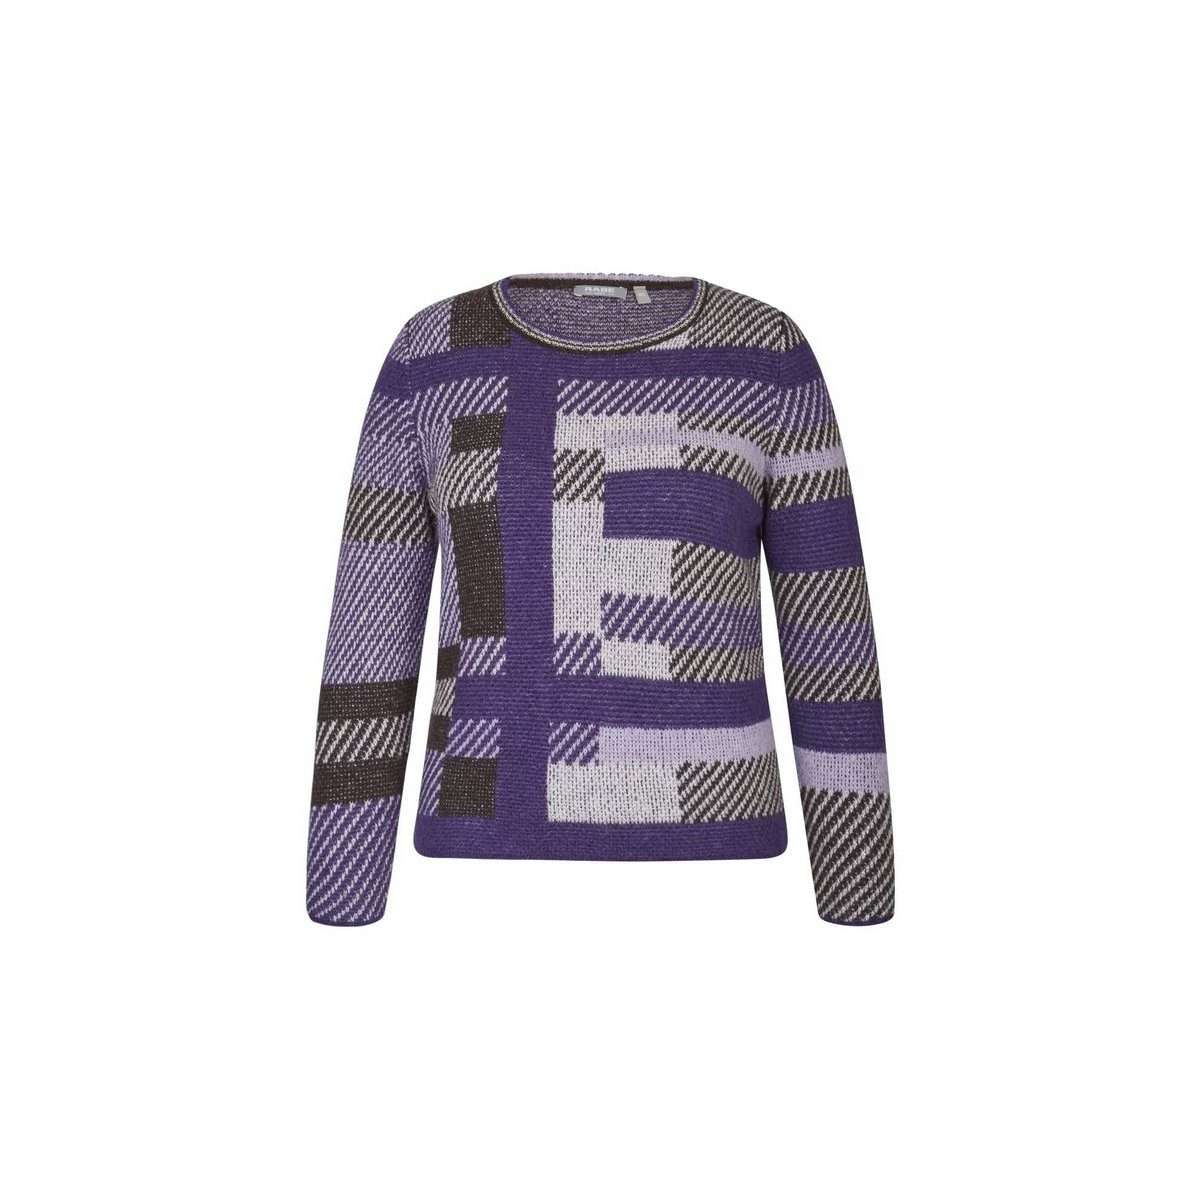 Вязаный свитер фиолетовый (1 шт.)